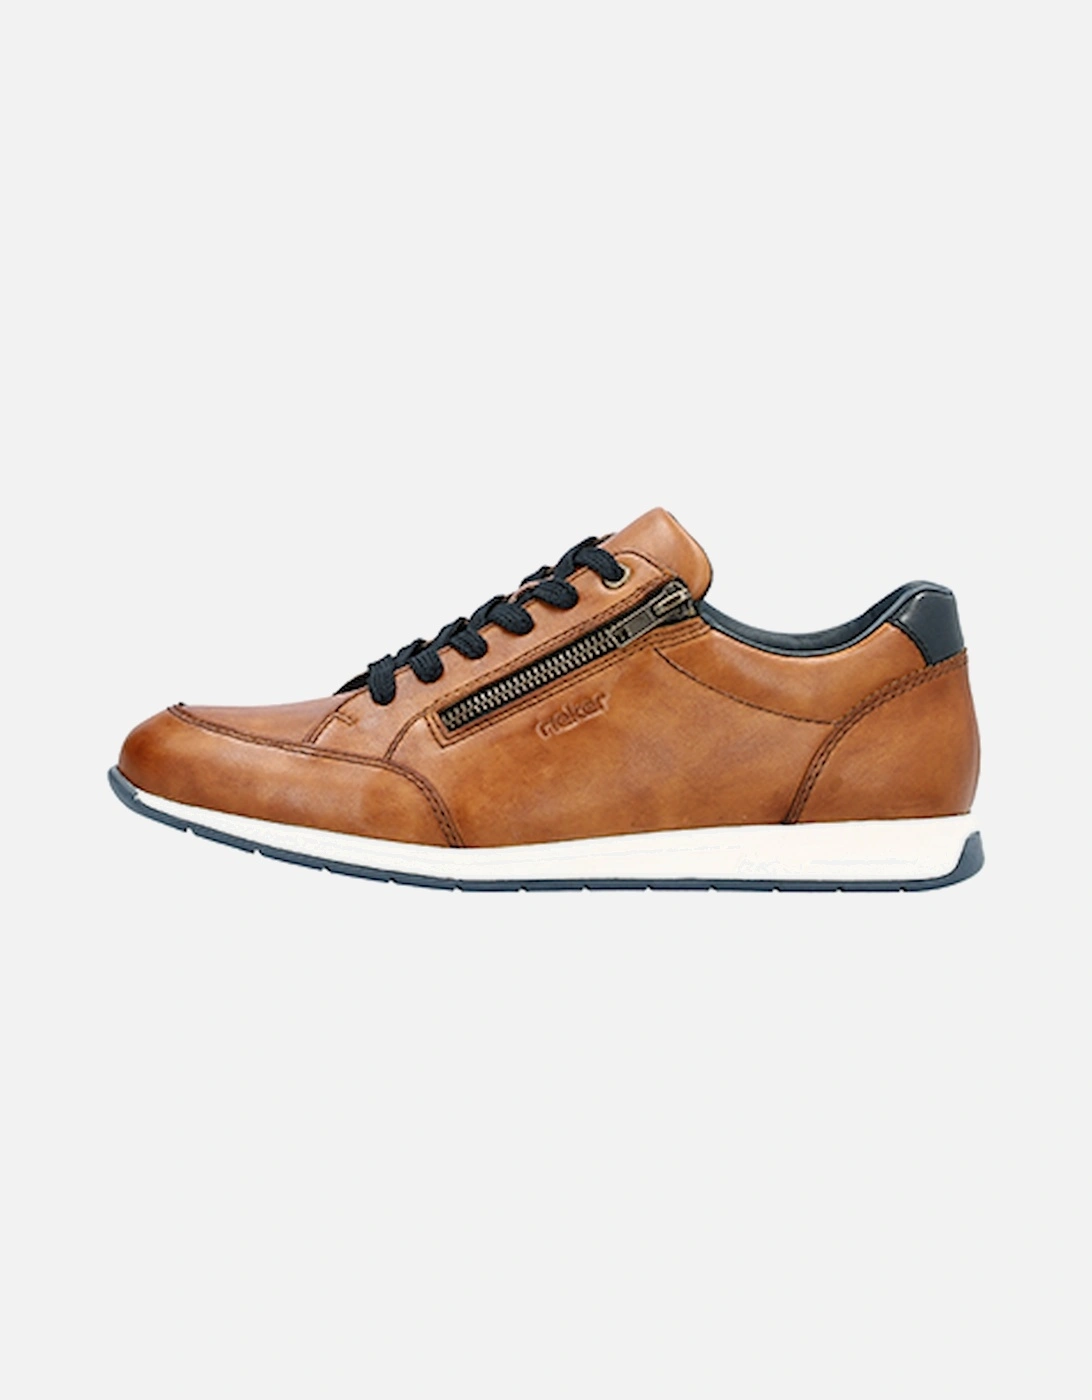 11903-24 Men's Shoe Brown